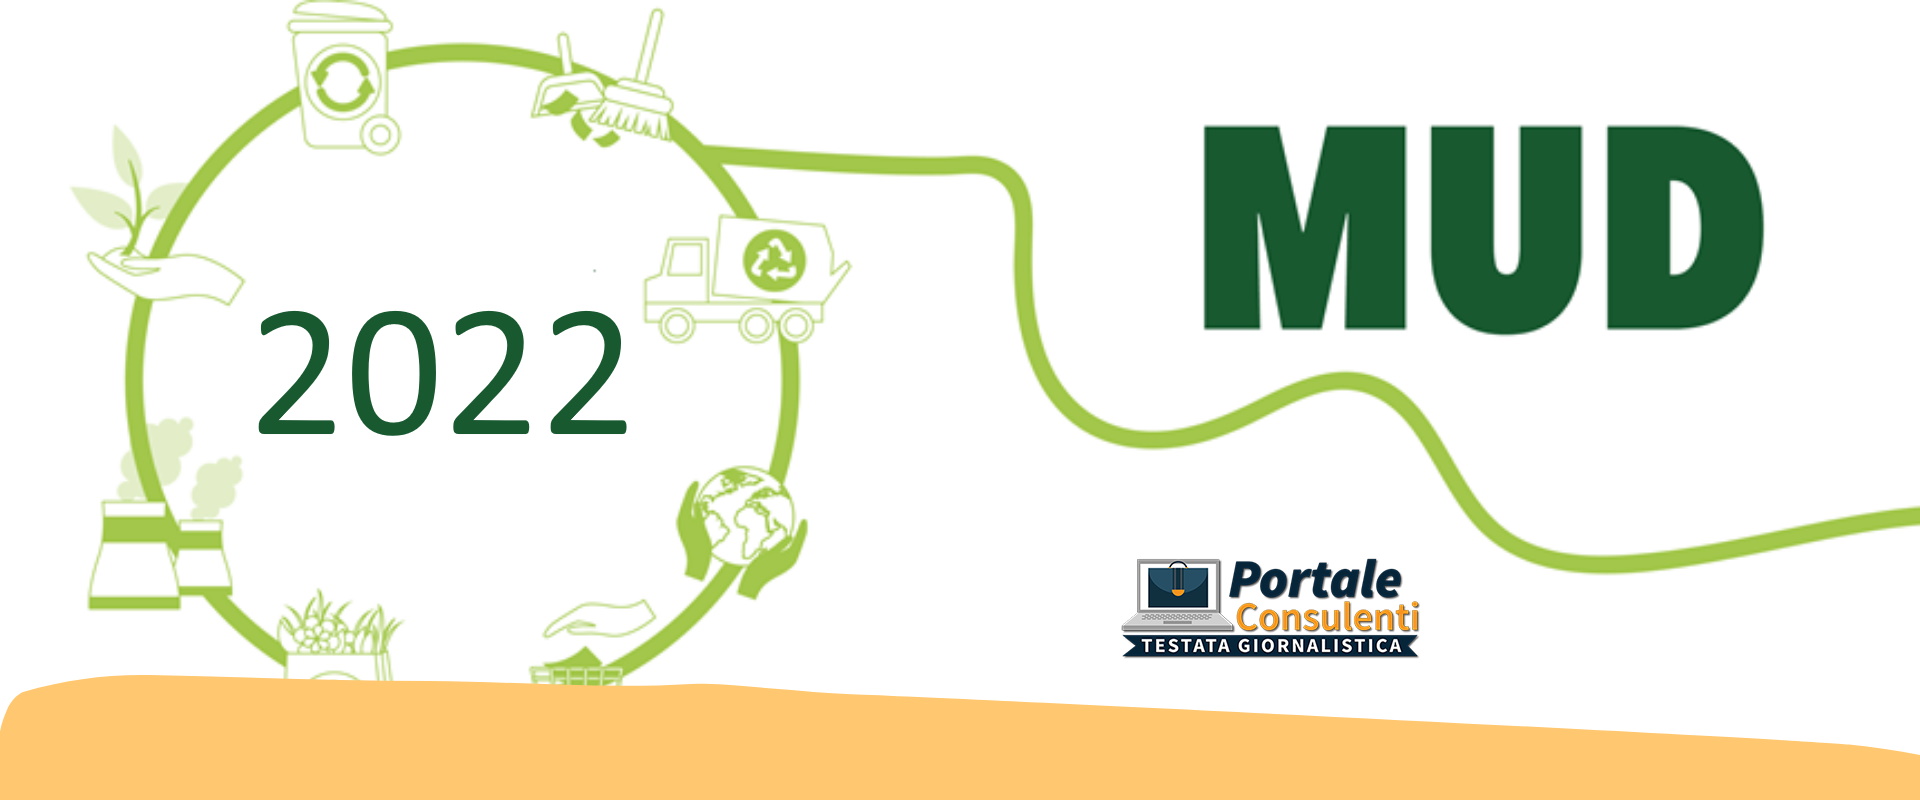 E’ stato pubblicato, in Gazzetta Ufficiale, il DPCM 17 dicembre 2021 “Approvazione del modello unico di dichiarazione ambientale per l’anno 2022”, che dovrà essere utilizzato per le dichiarazioni riferite all’anno 2021.